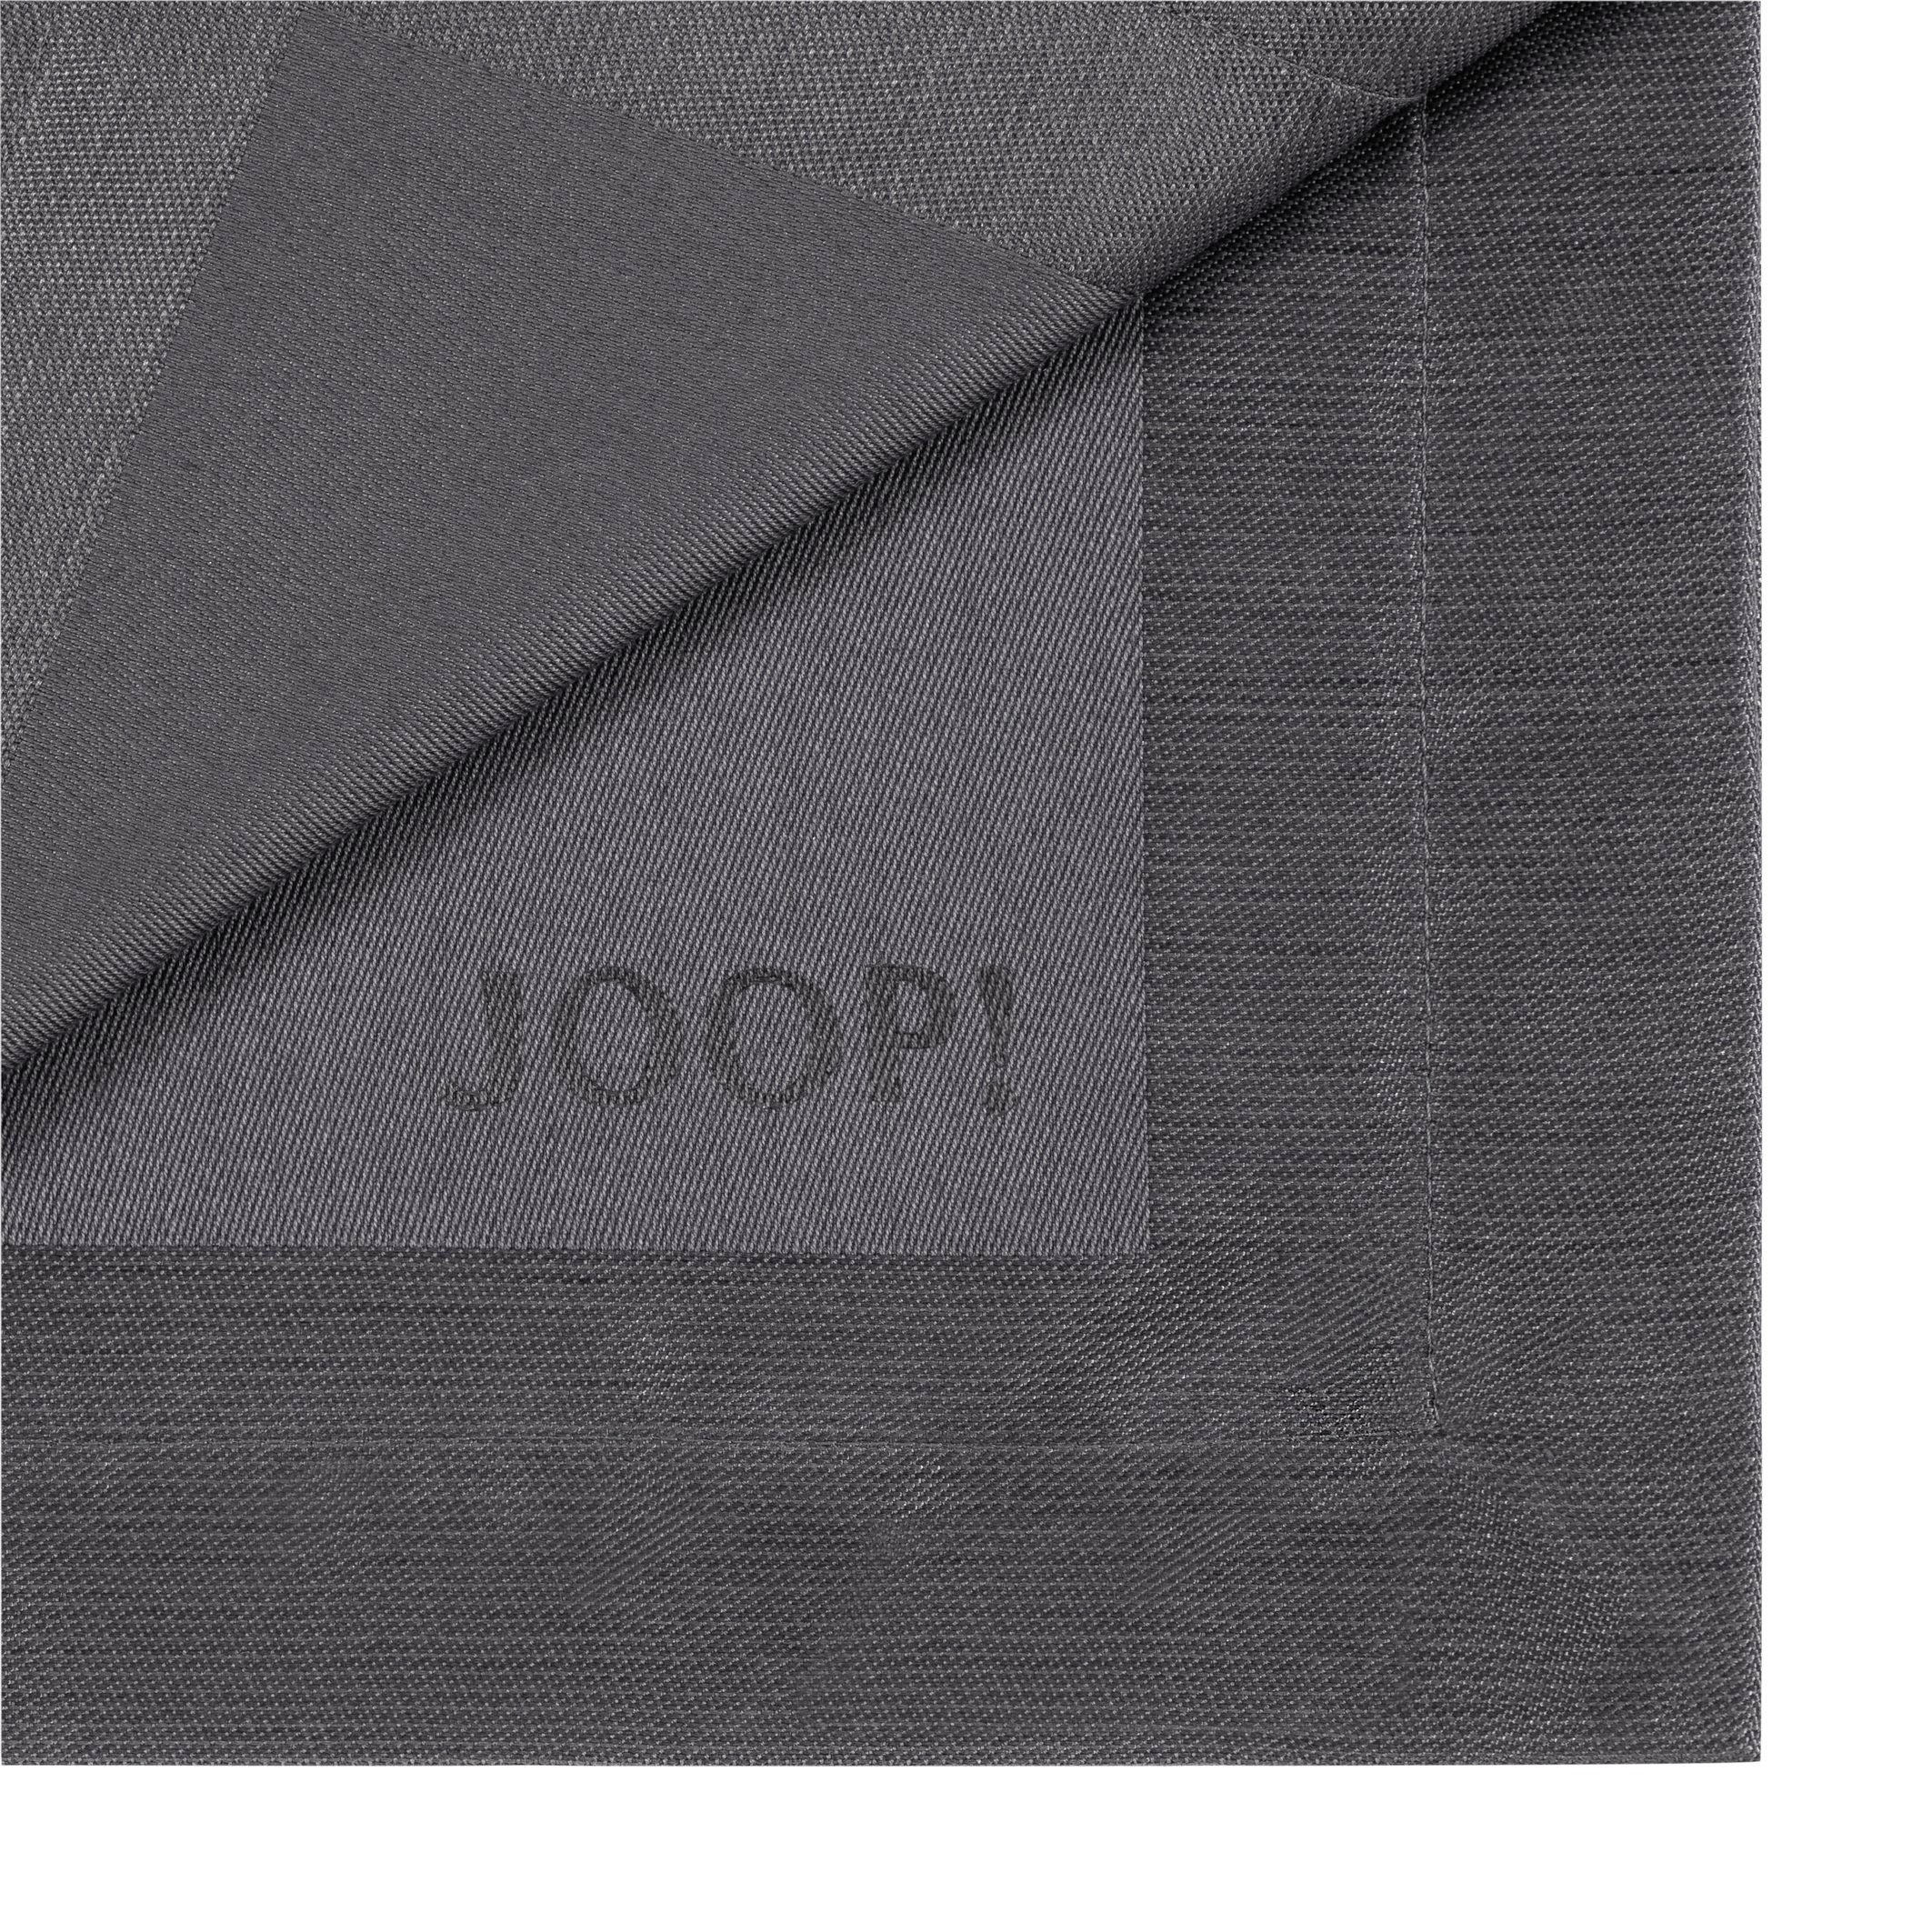 TISCHSET 2ER-SET Textil Graphitfarben 36/48 cm  - Graphitfarben, Design, Textil (36/48cm) - Joop!